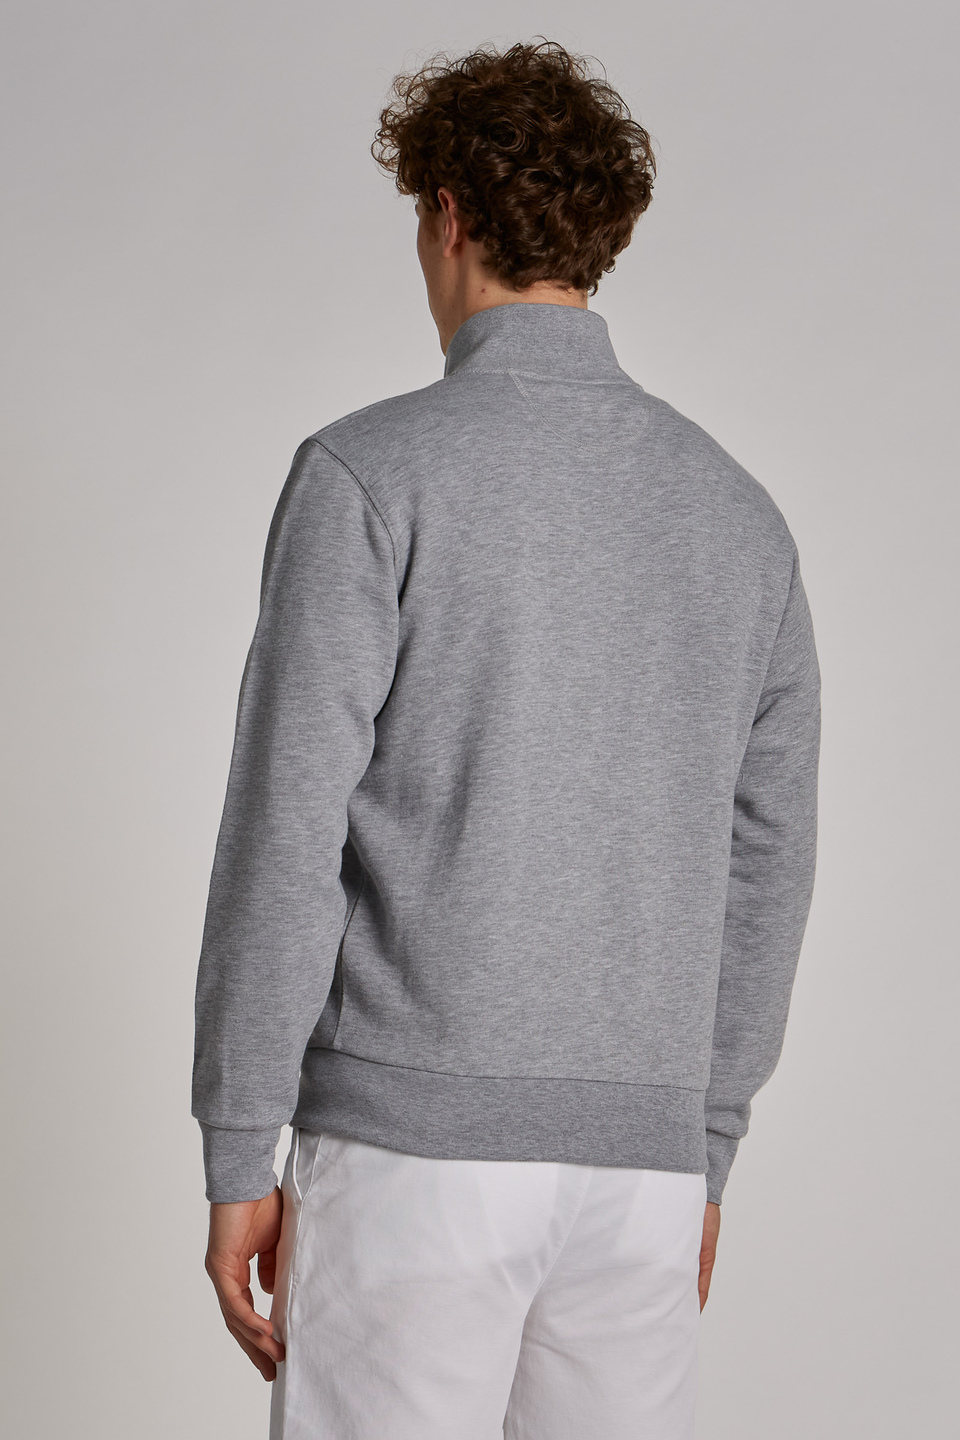 Herren-Sweatshirt aus Baumwollmix mit hohem Kragen und Reißverschluss im Regular Fit - La Martina - Official Online Shop